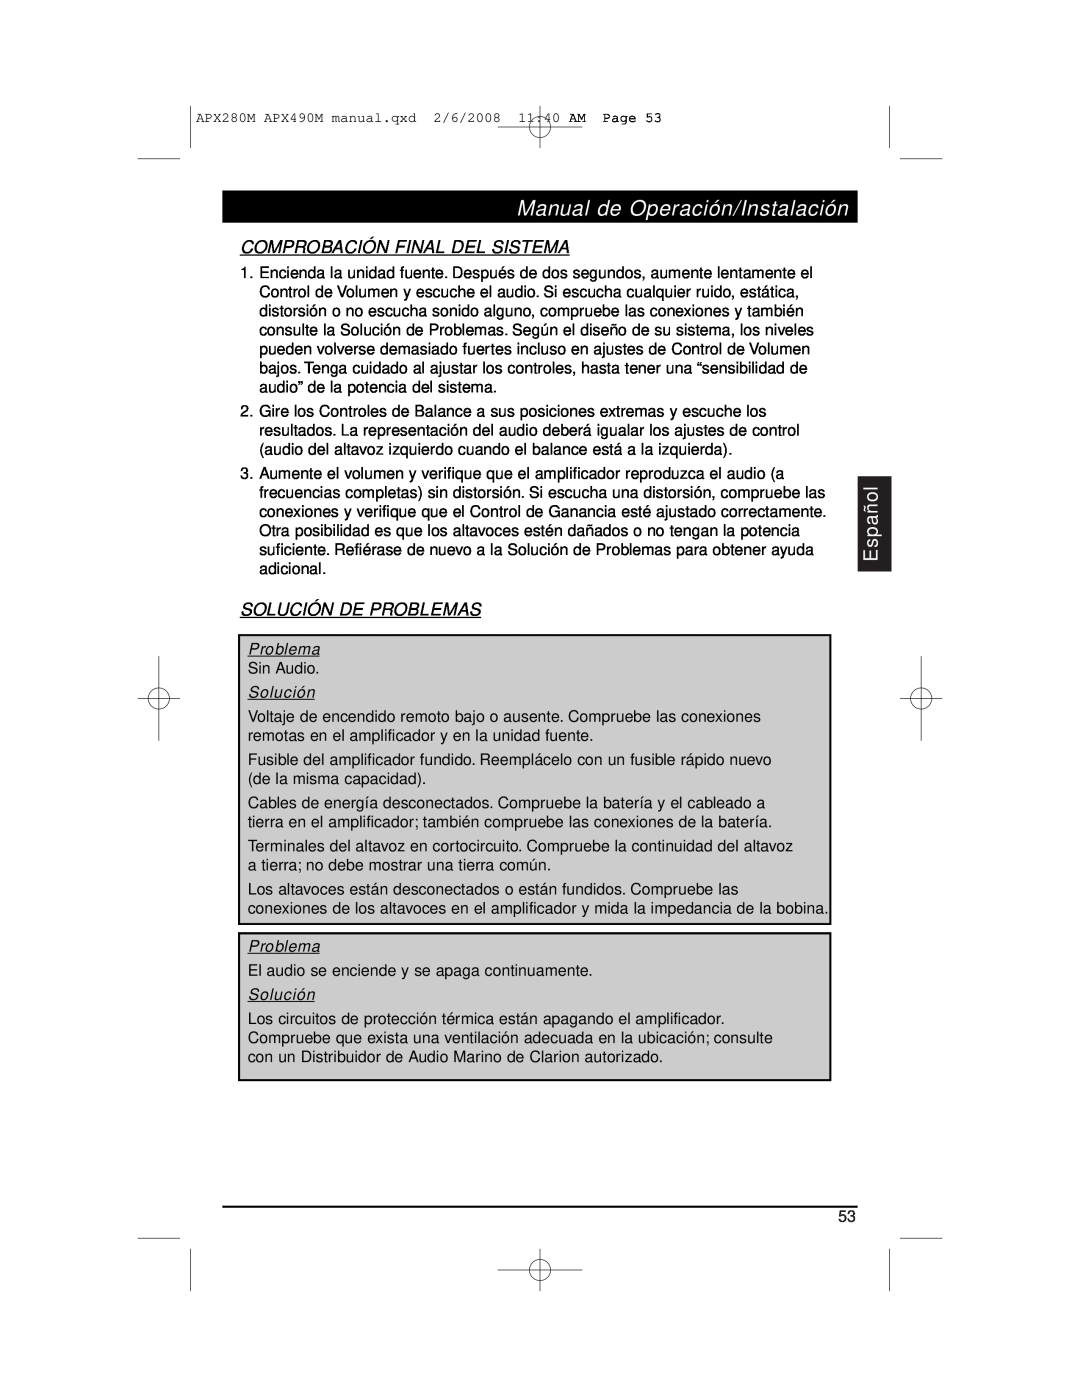 Clarion APX290M Comprobación Final Del Sistema, Solución De Pr Oblemas, Problema, Manual de Operación/Instalación, Español 